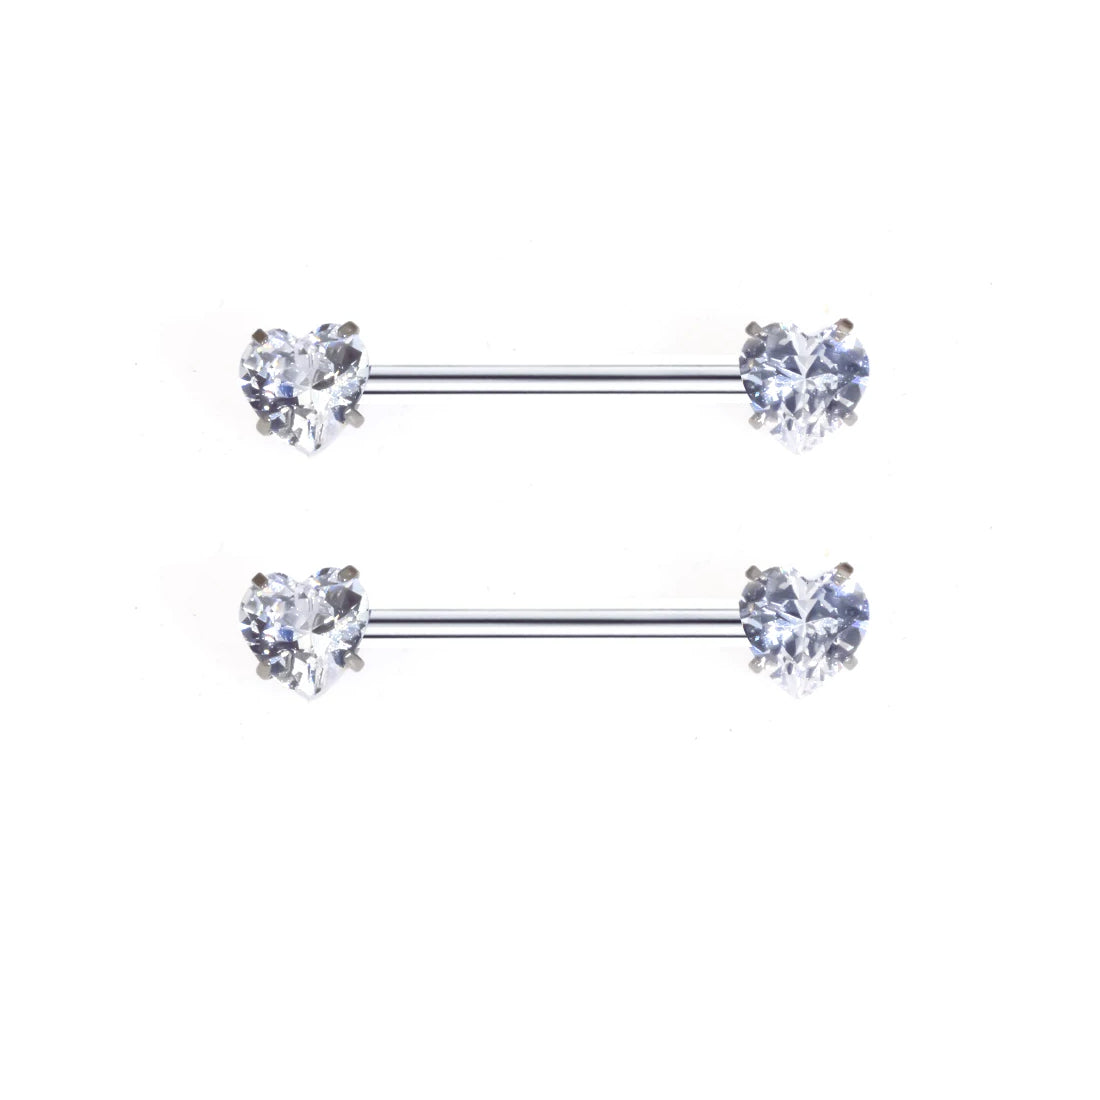 Herz-Nippelringe mit Diamanten, Gold und Silber, Titan 2 Stück Nippelpiercing-Hanteln 16G